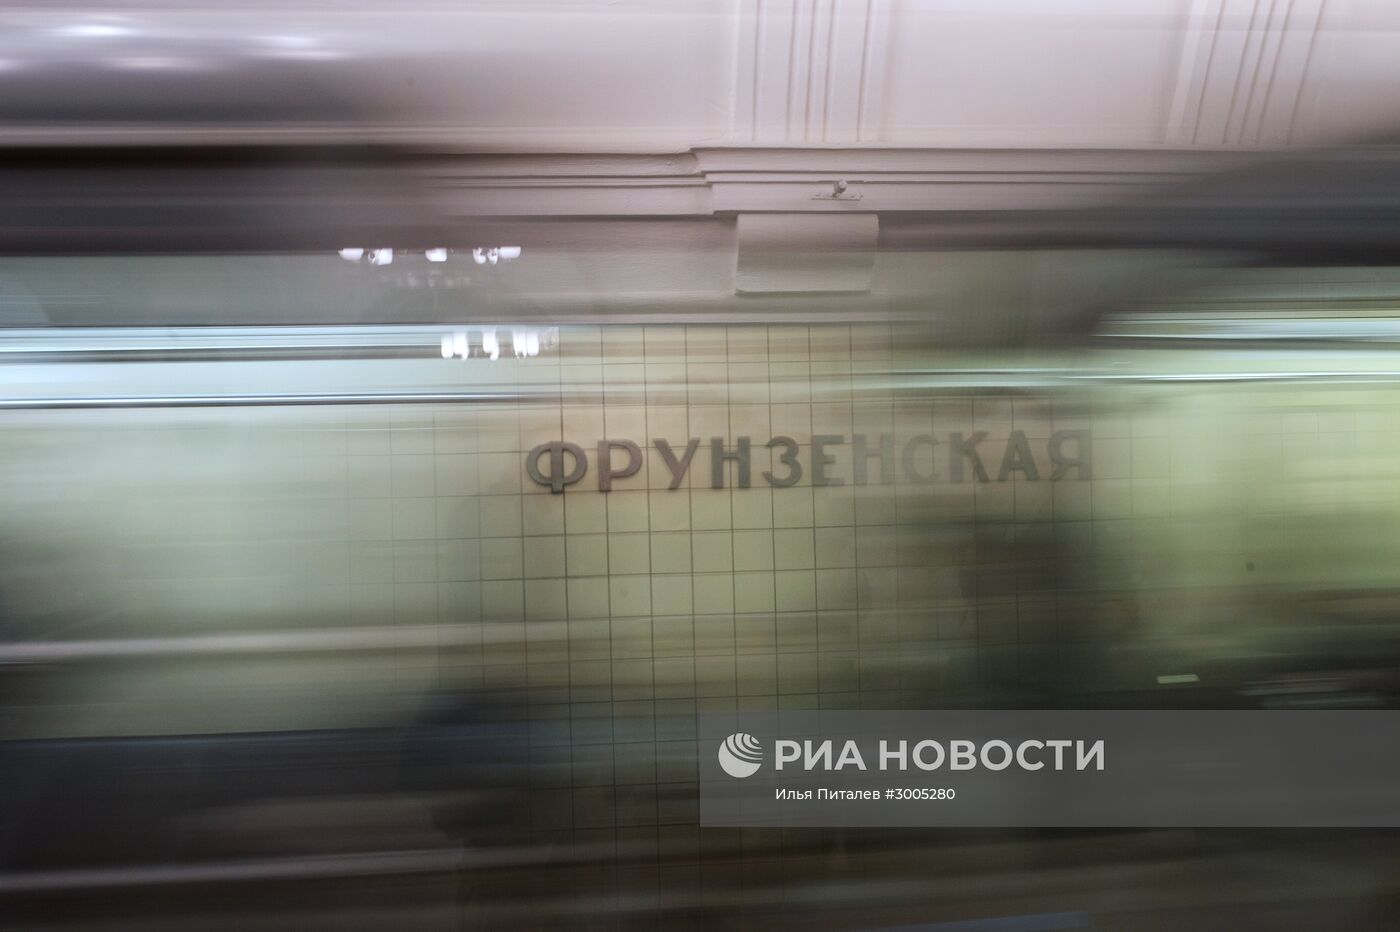 Открытие станция метро "Фрунзенская"